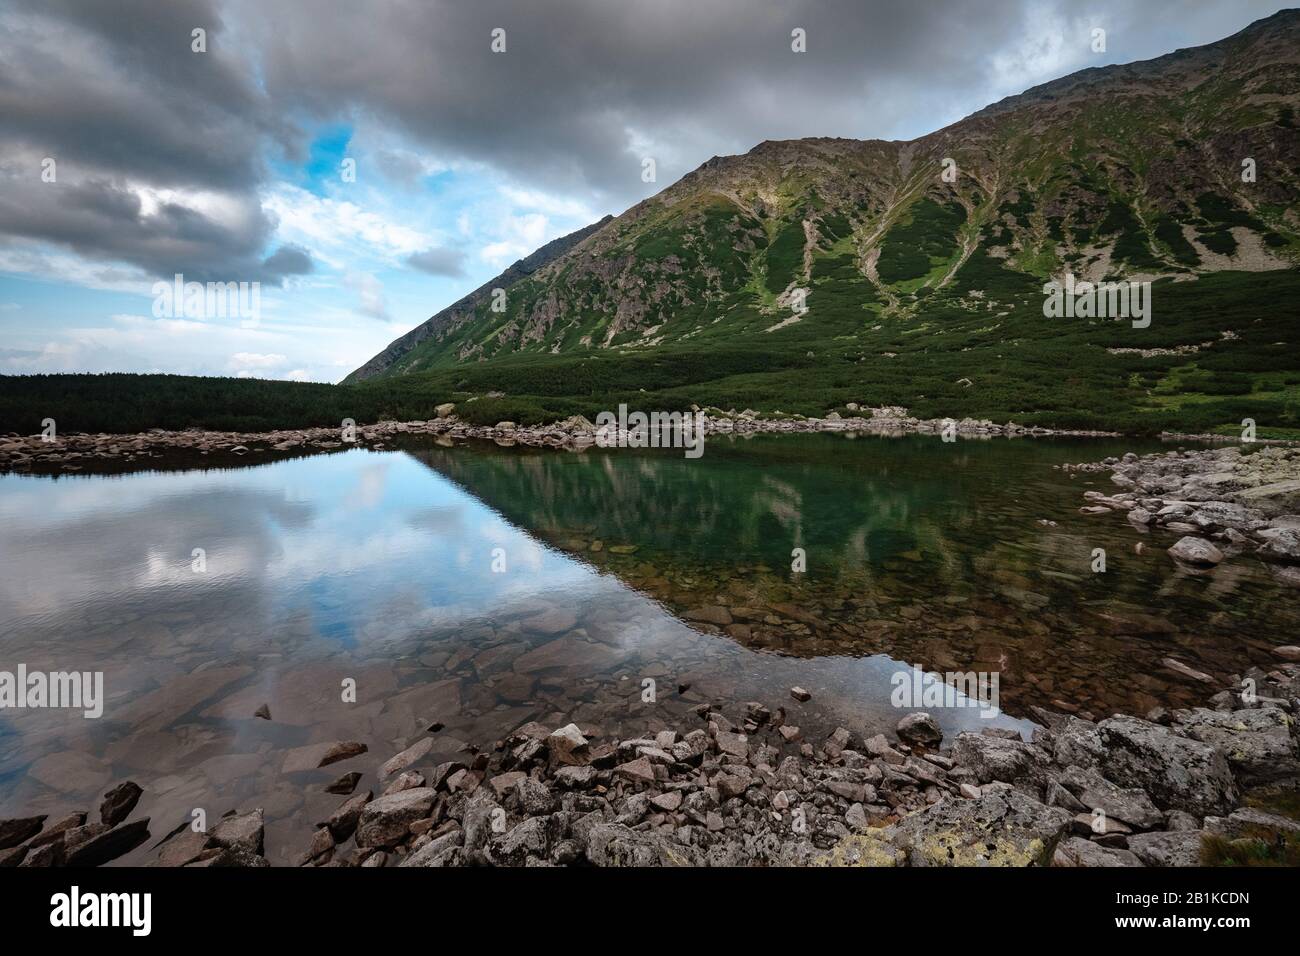 Czarny Staw Gasienicowy Nelle Montagne Tatra Polonia. La rete mondiale Di Riserve della biosfera dell'UNESCO. Valle Dei Cinque Laghi. Splendida Vista Panoramica. Europa N Foto Stock